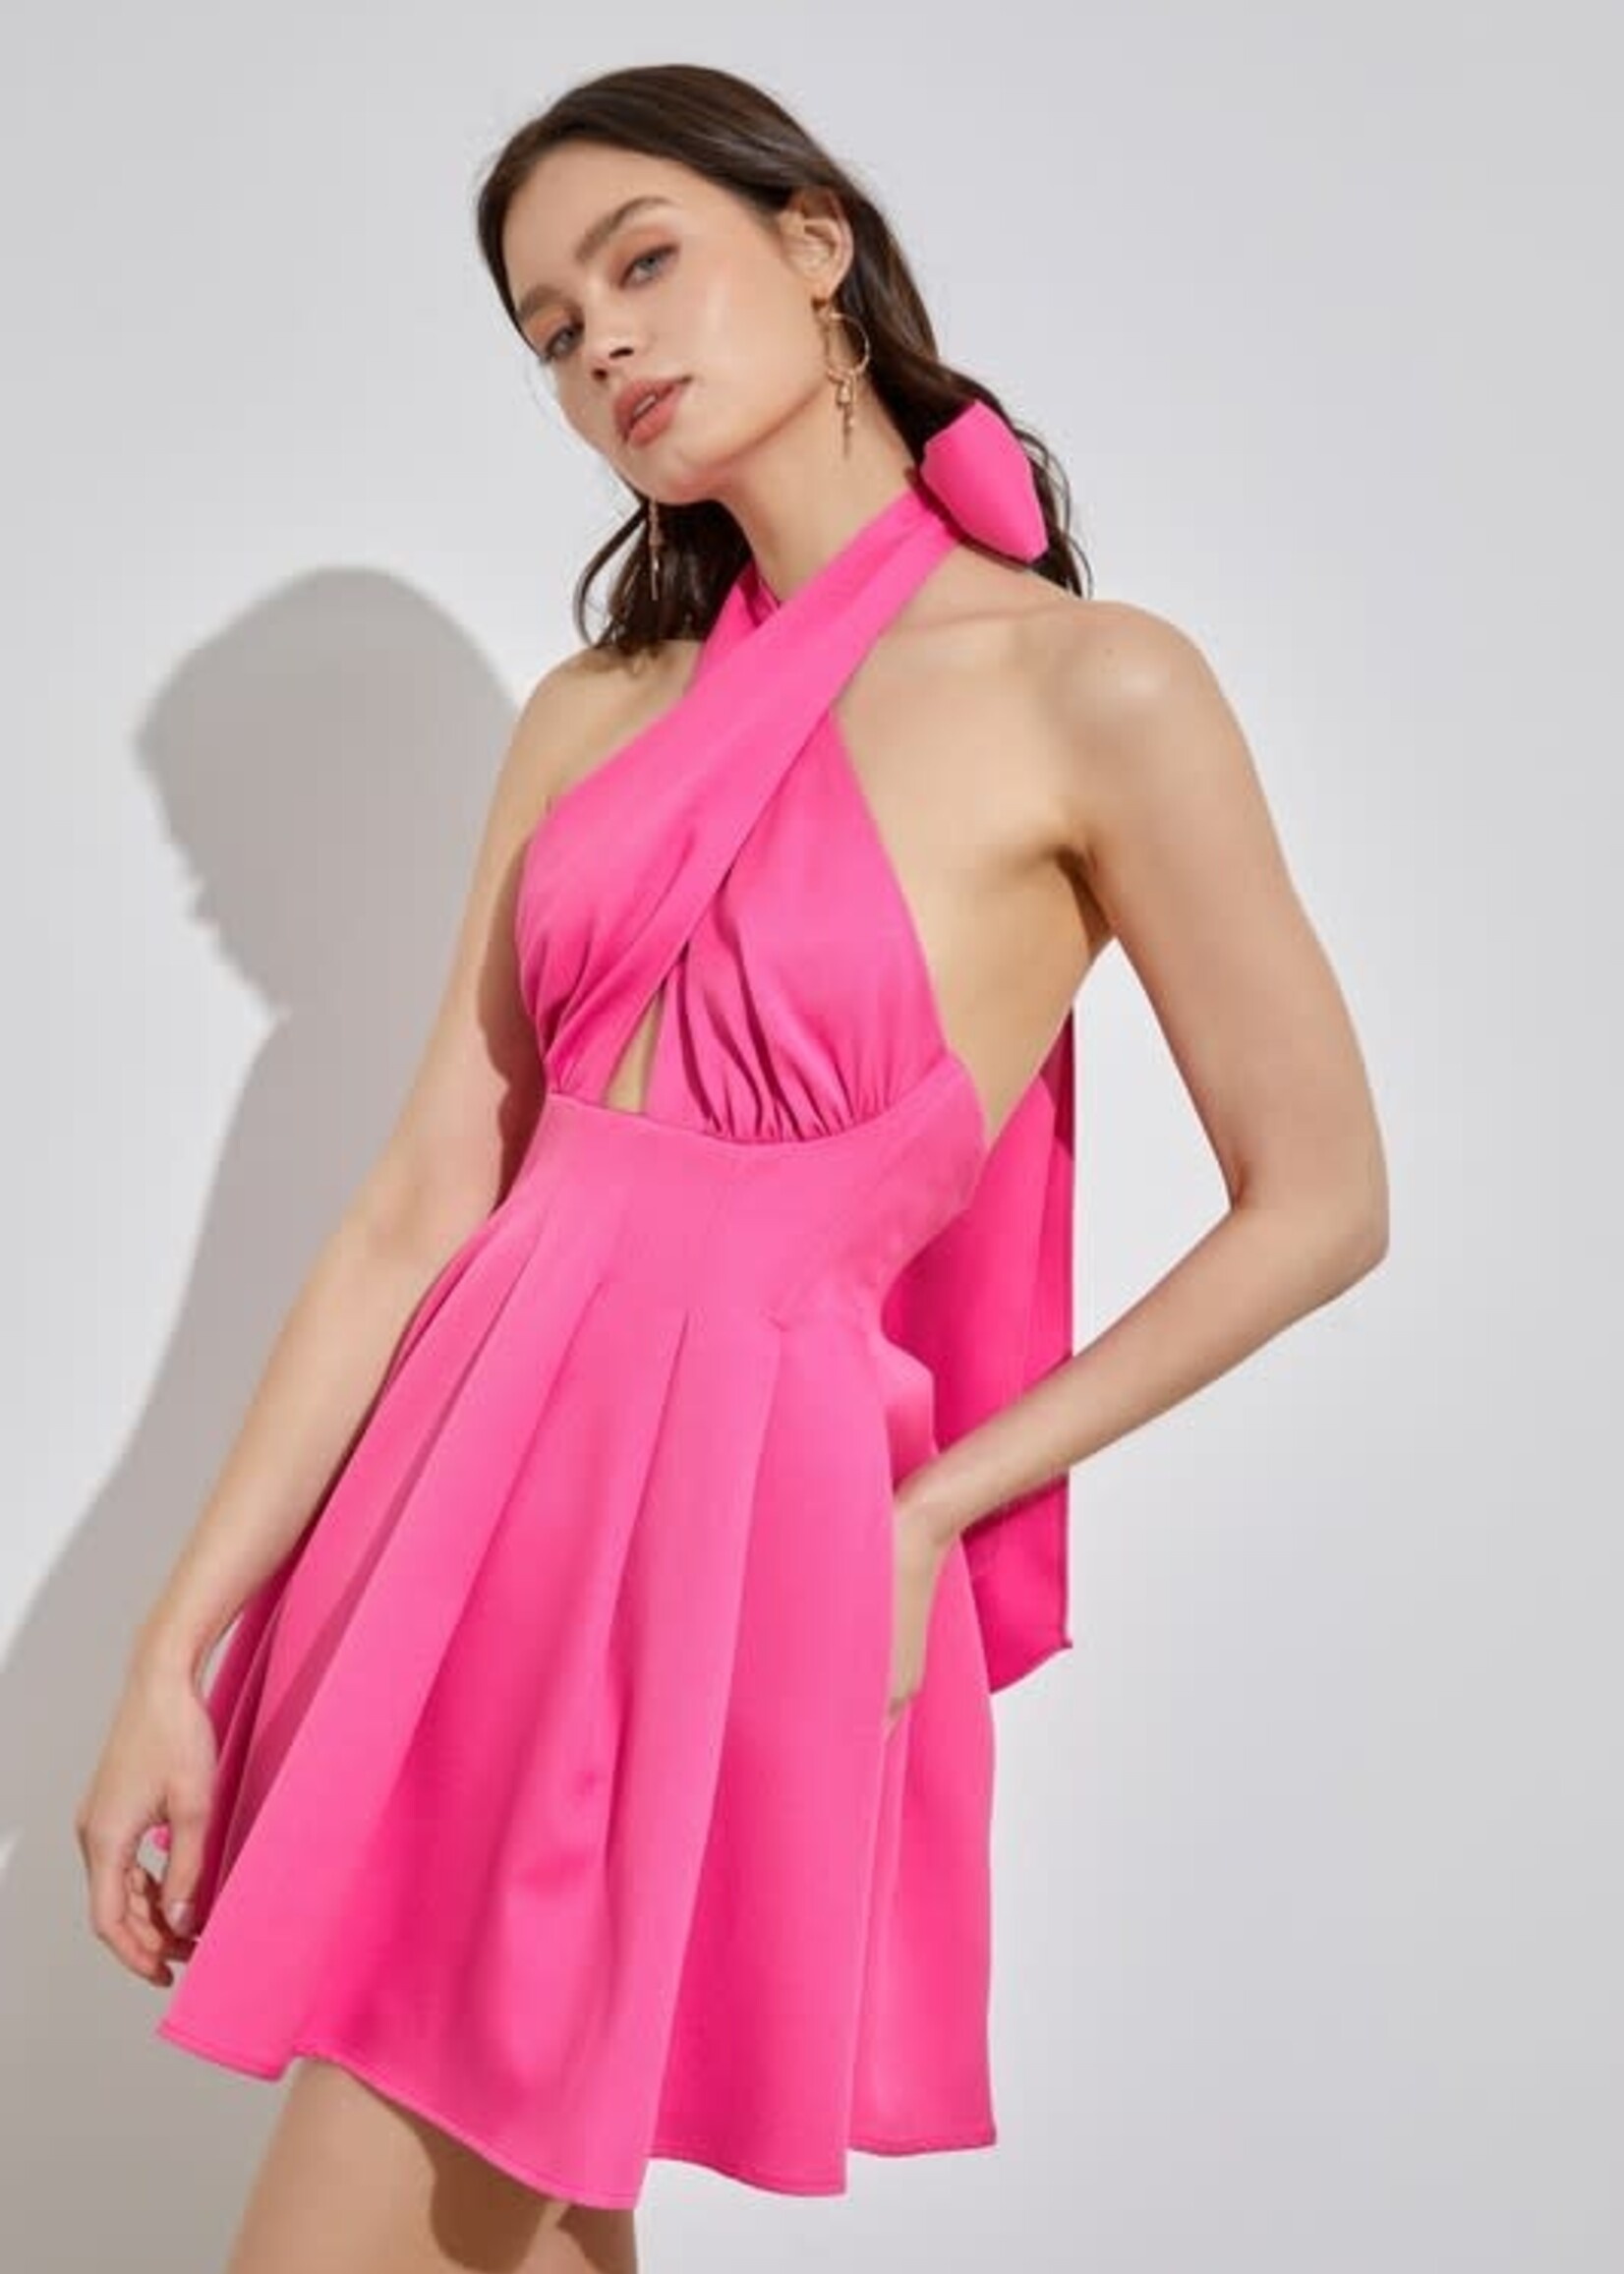 Criss Cross Hot Pink Party Dress